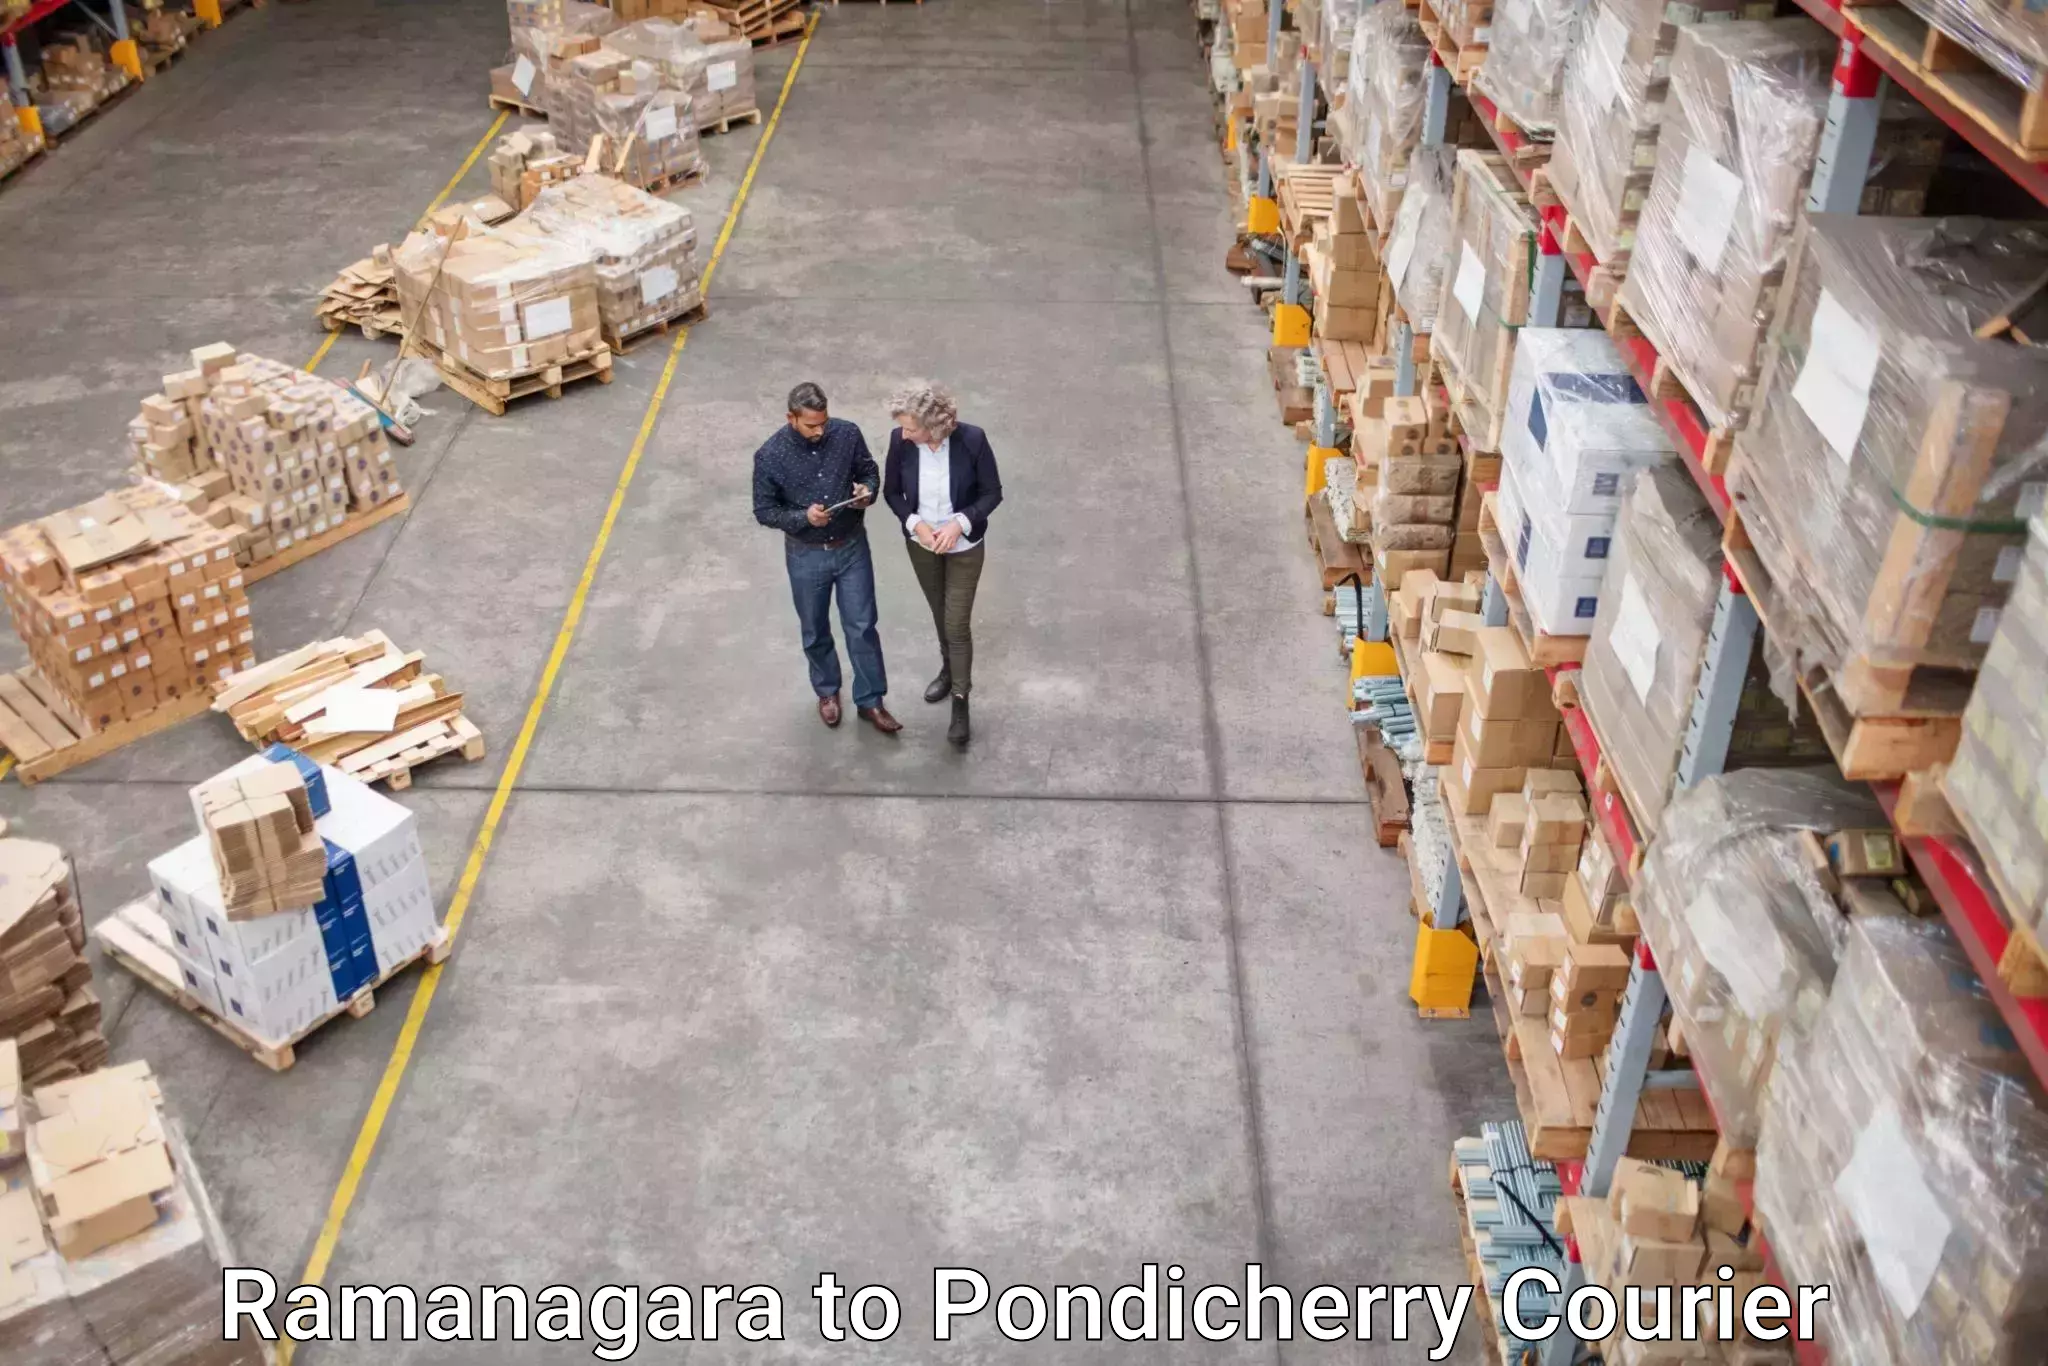 Courier service efficiency Ramanagara to Pondicherry